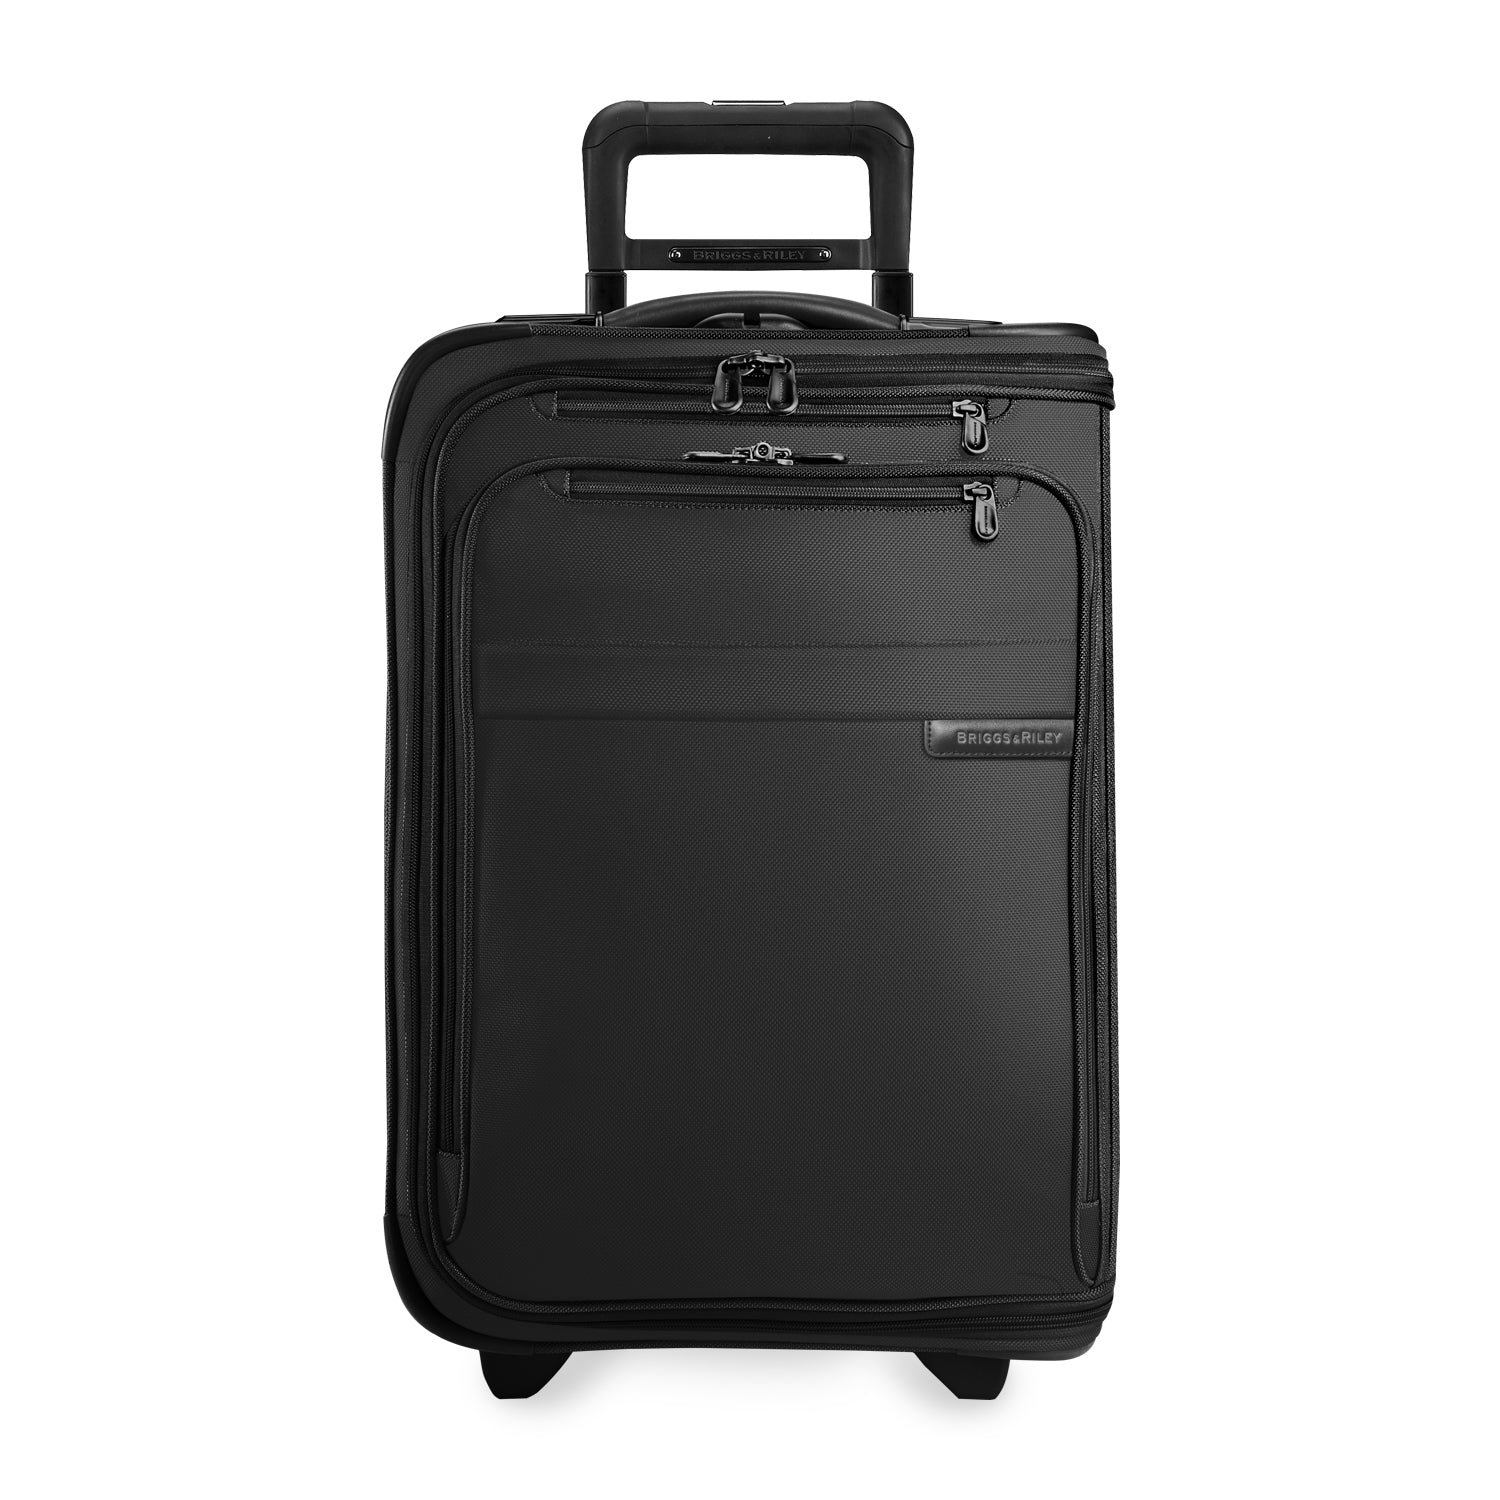 CarryOn Luggage Lifetime Guarantee Briggs & Riley